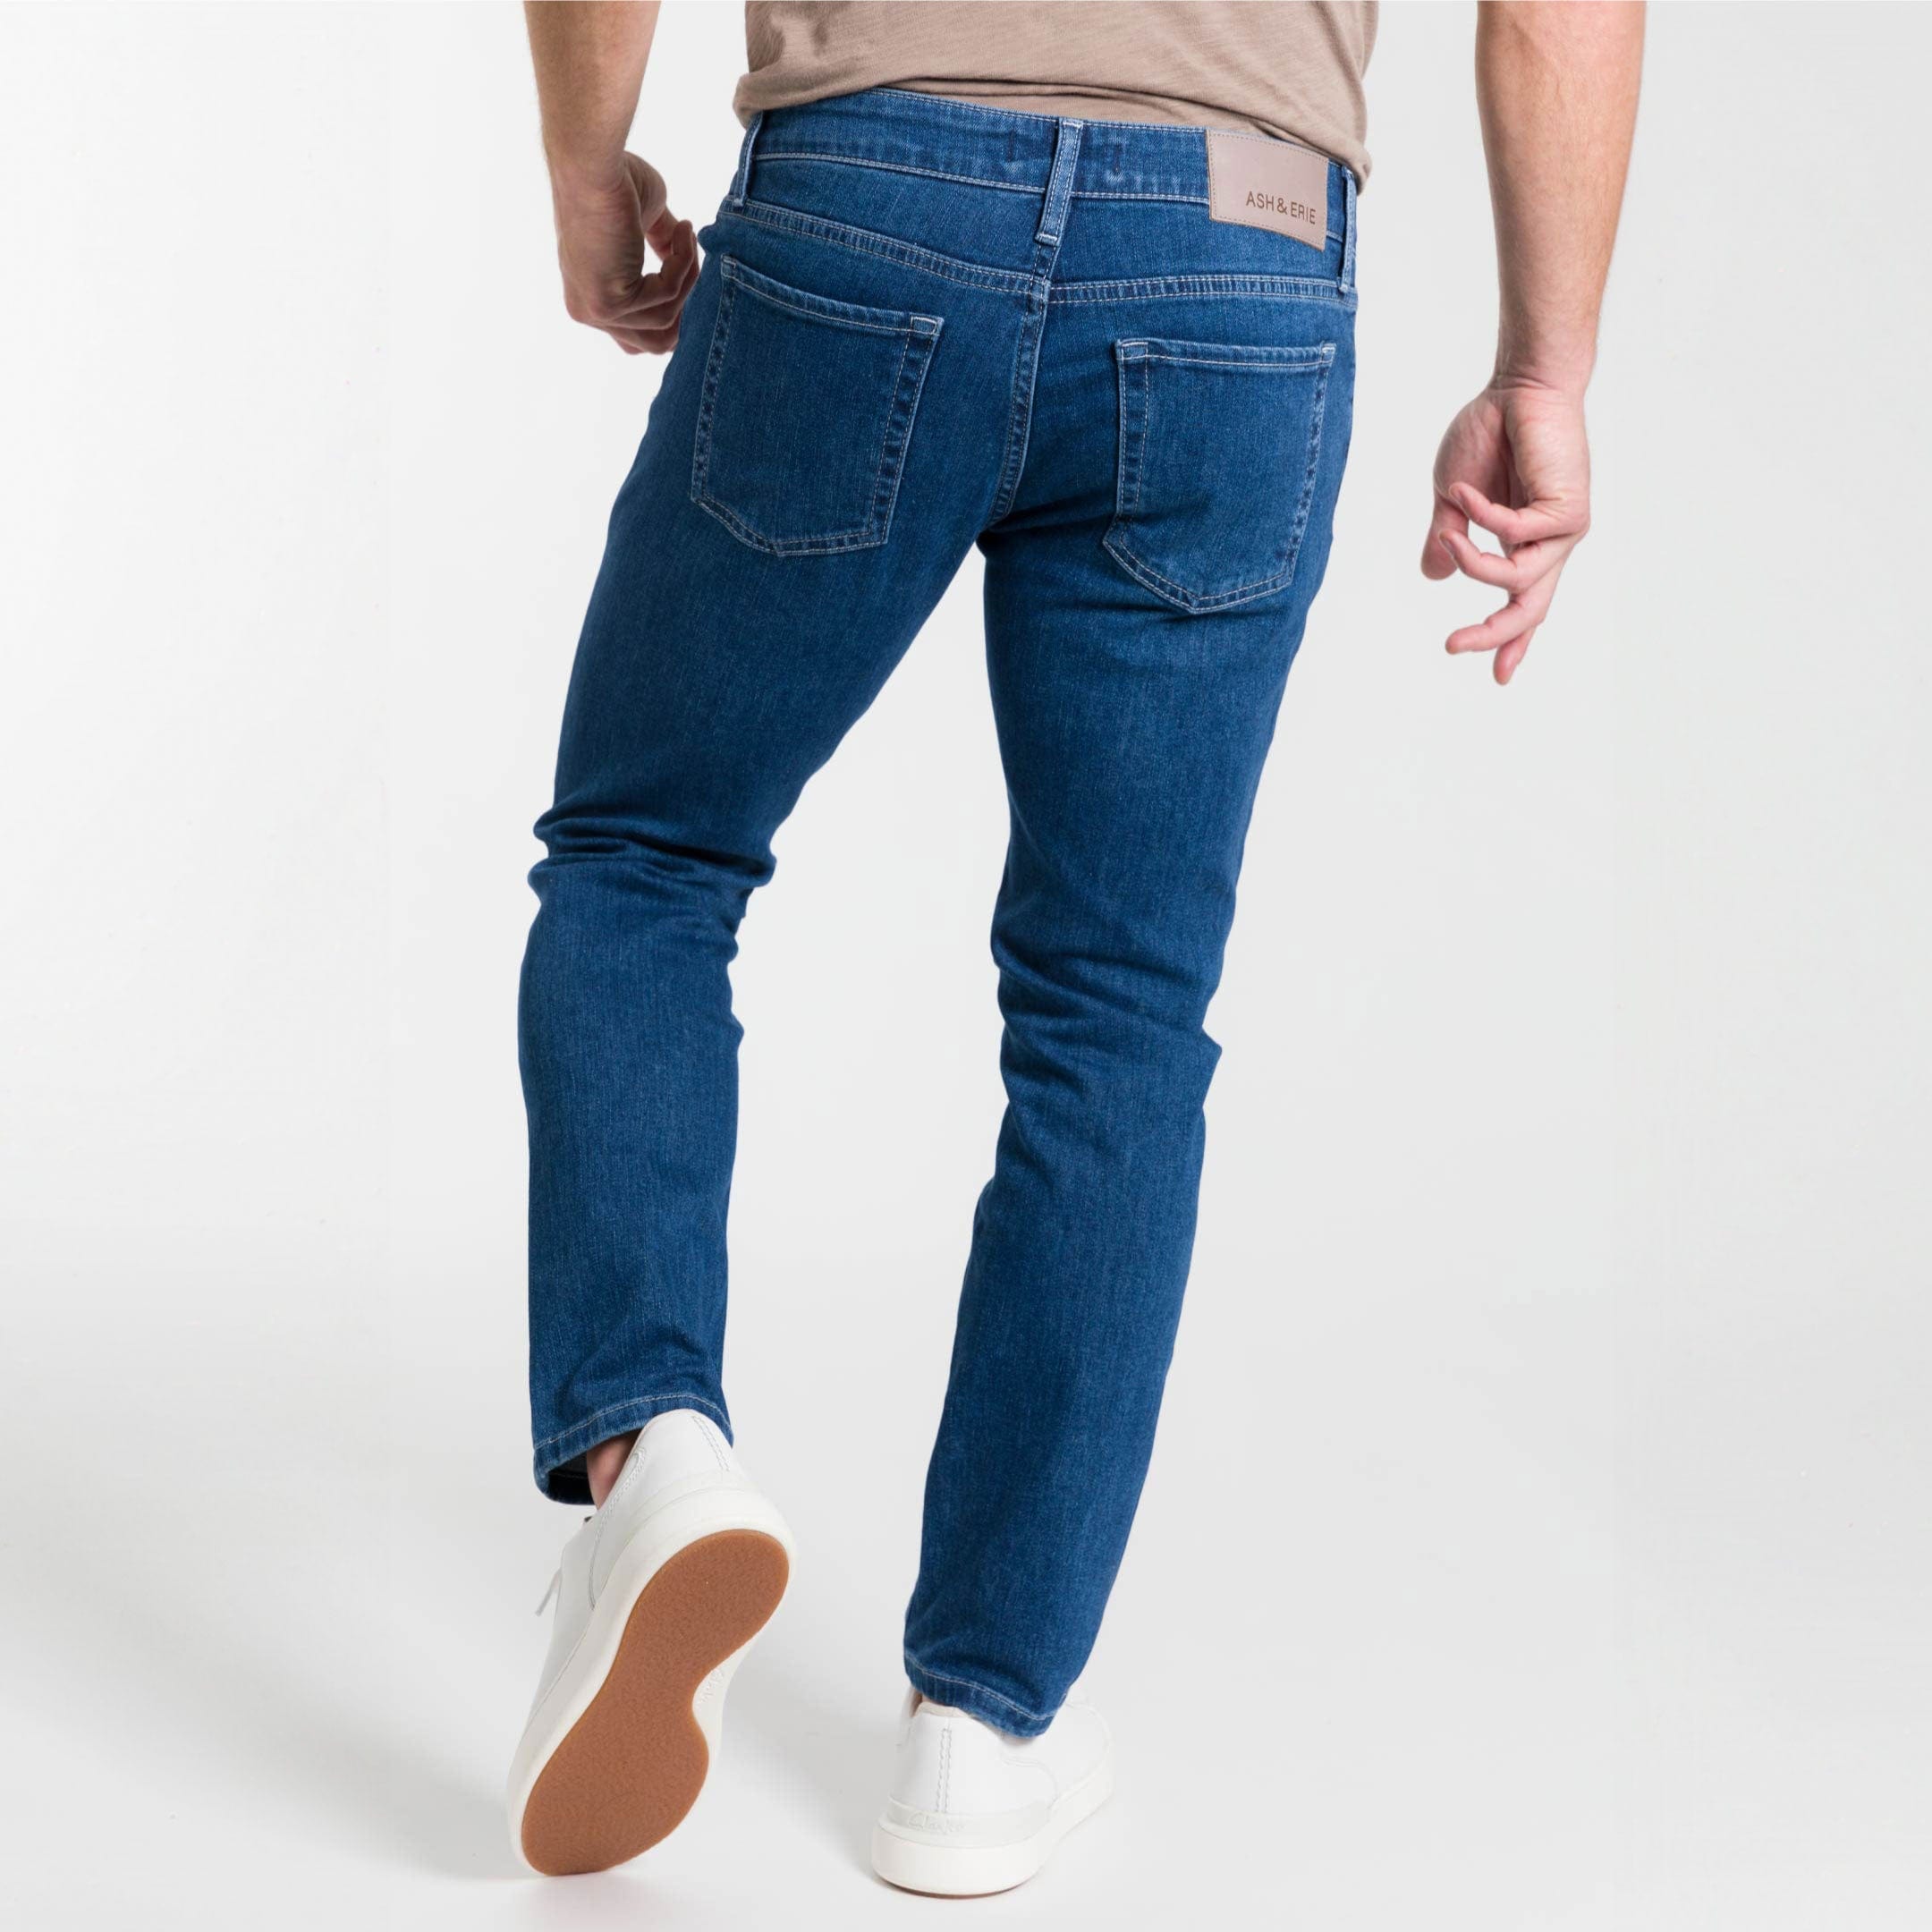 Ash & Erie Medium Wash Midtown Jeans for Short Men   Midtown Jeans